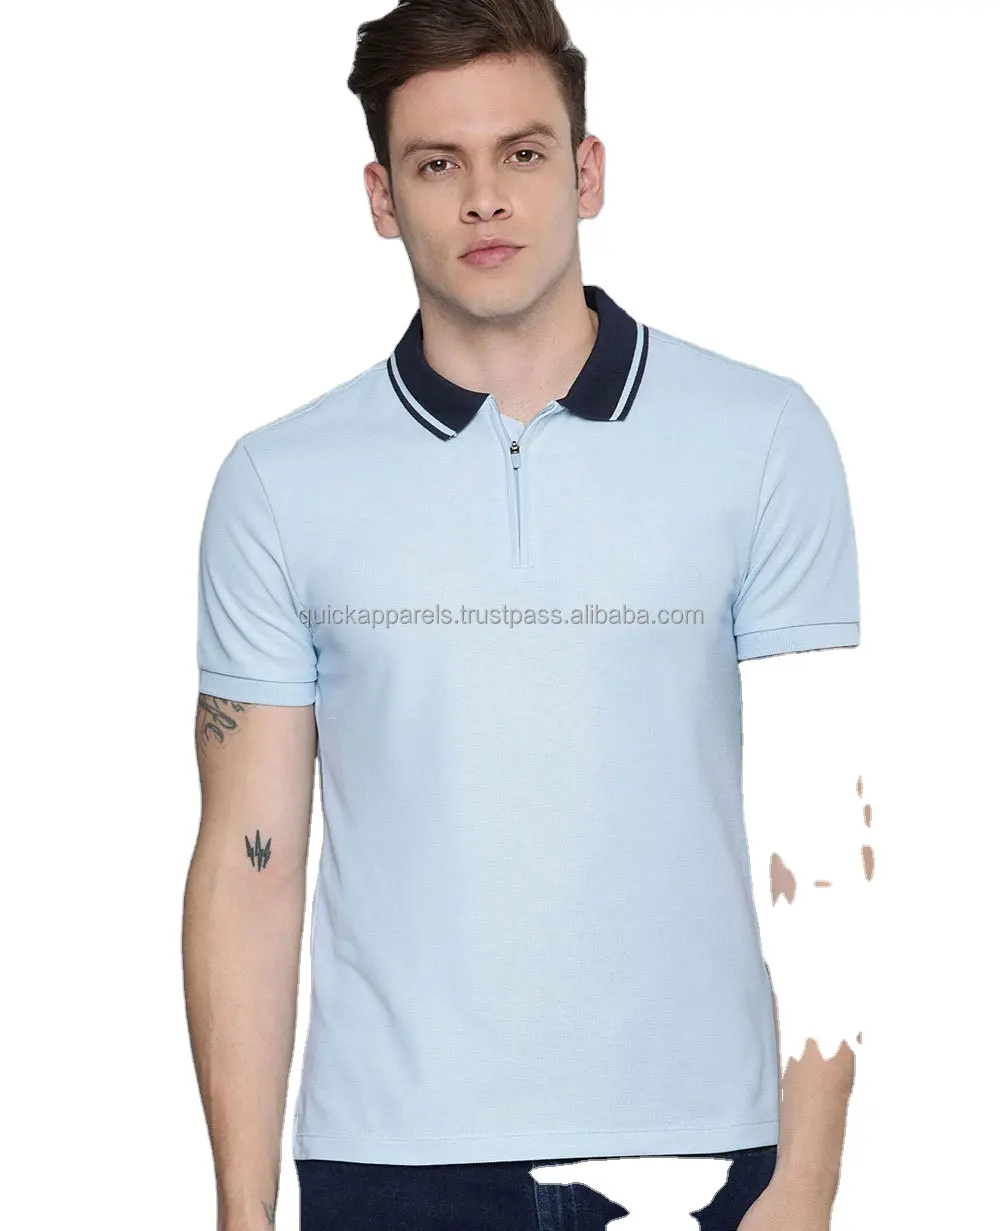 Yeni varış erkek spor Polo tişört özel yapılmış hafif erkek t-shirtü kaliteli erkek polo T-Shirt satılık